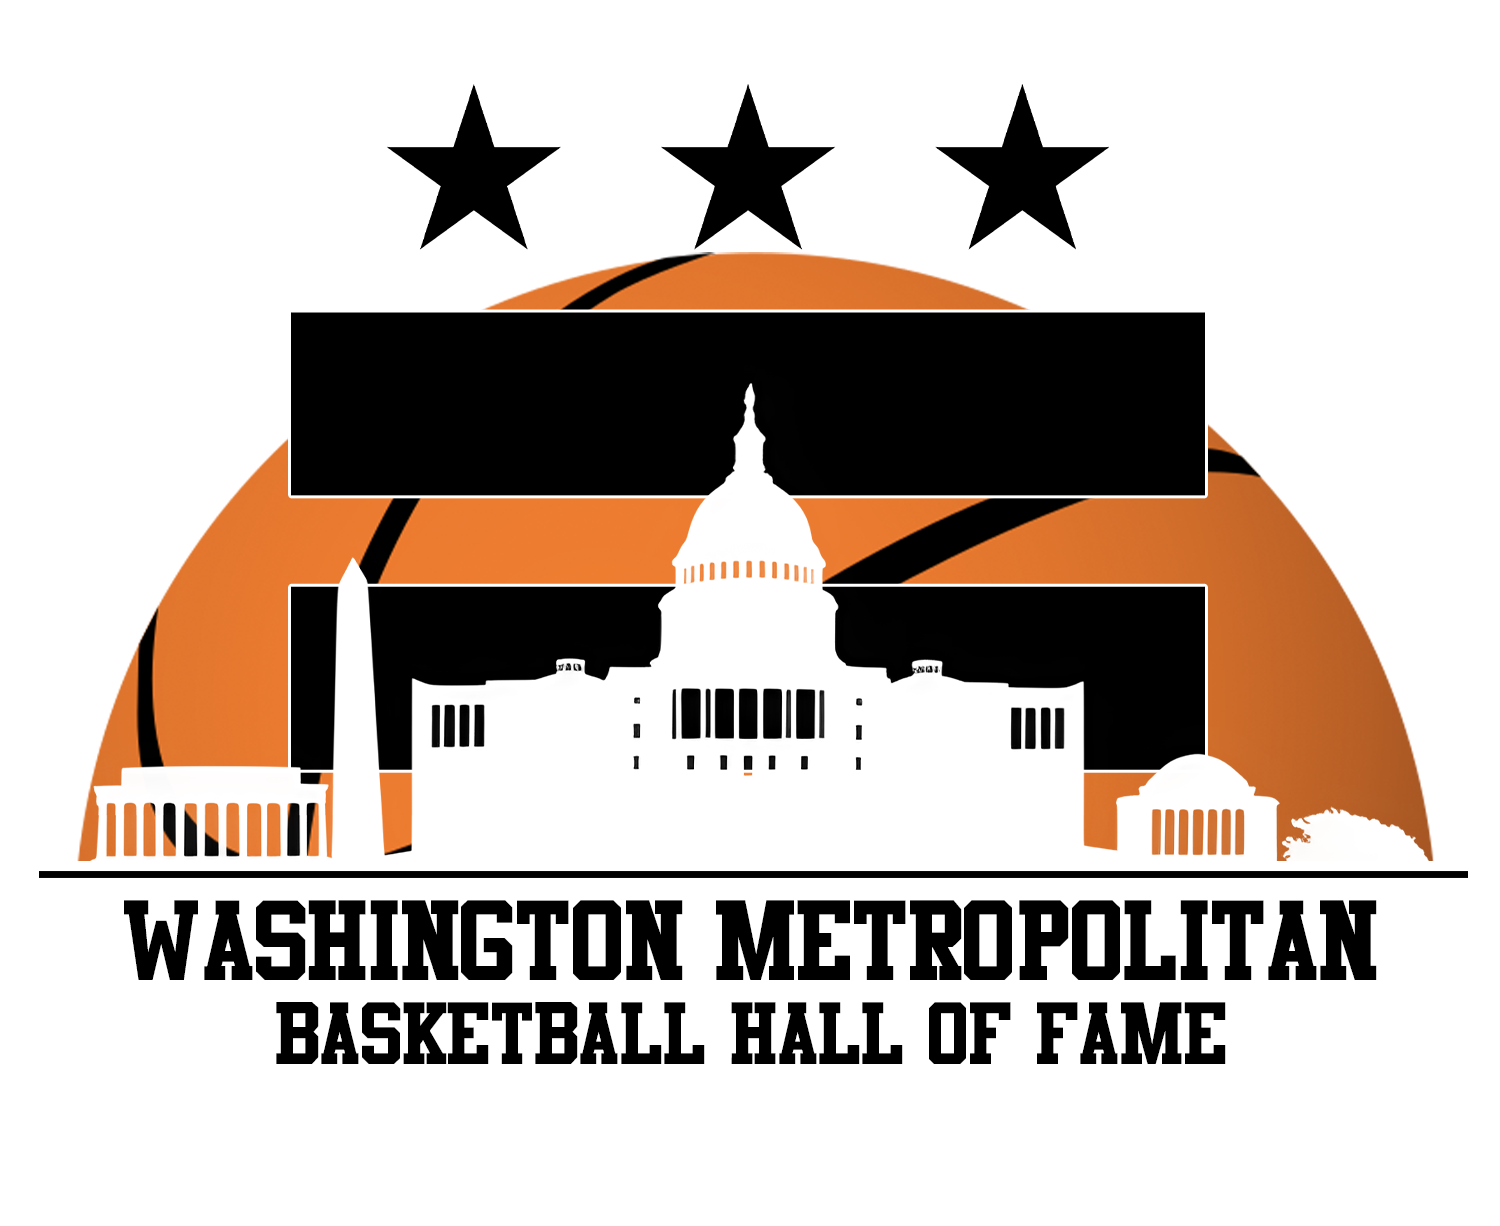 Washington Metropolitan Basketball Hall of Fame